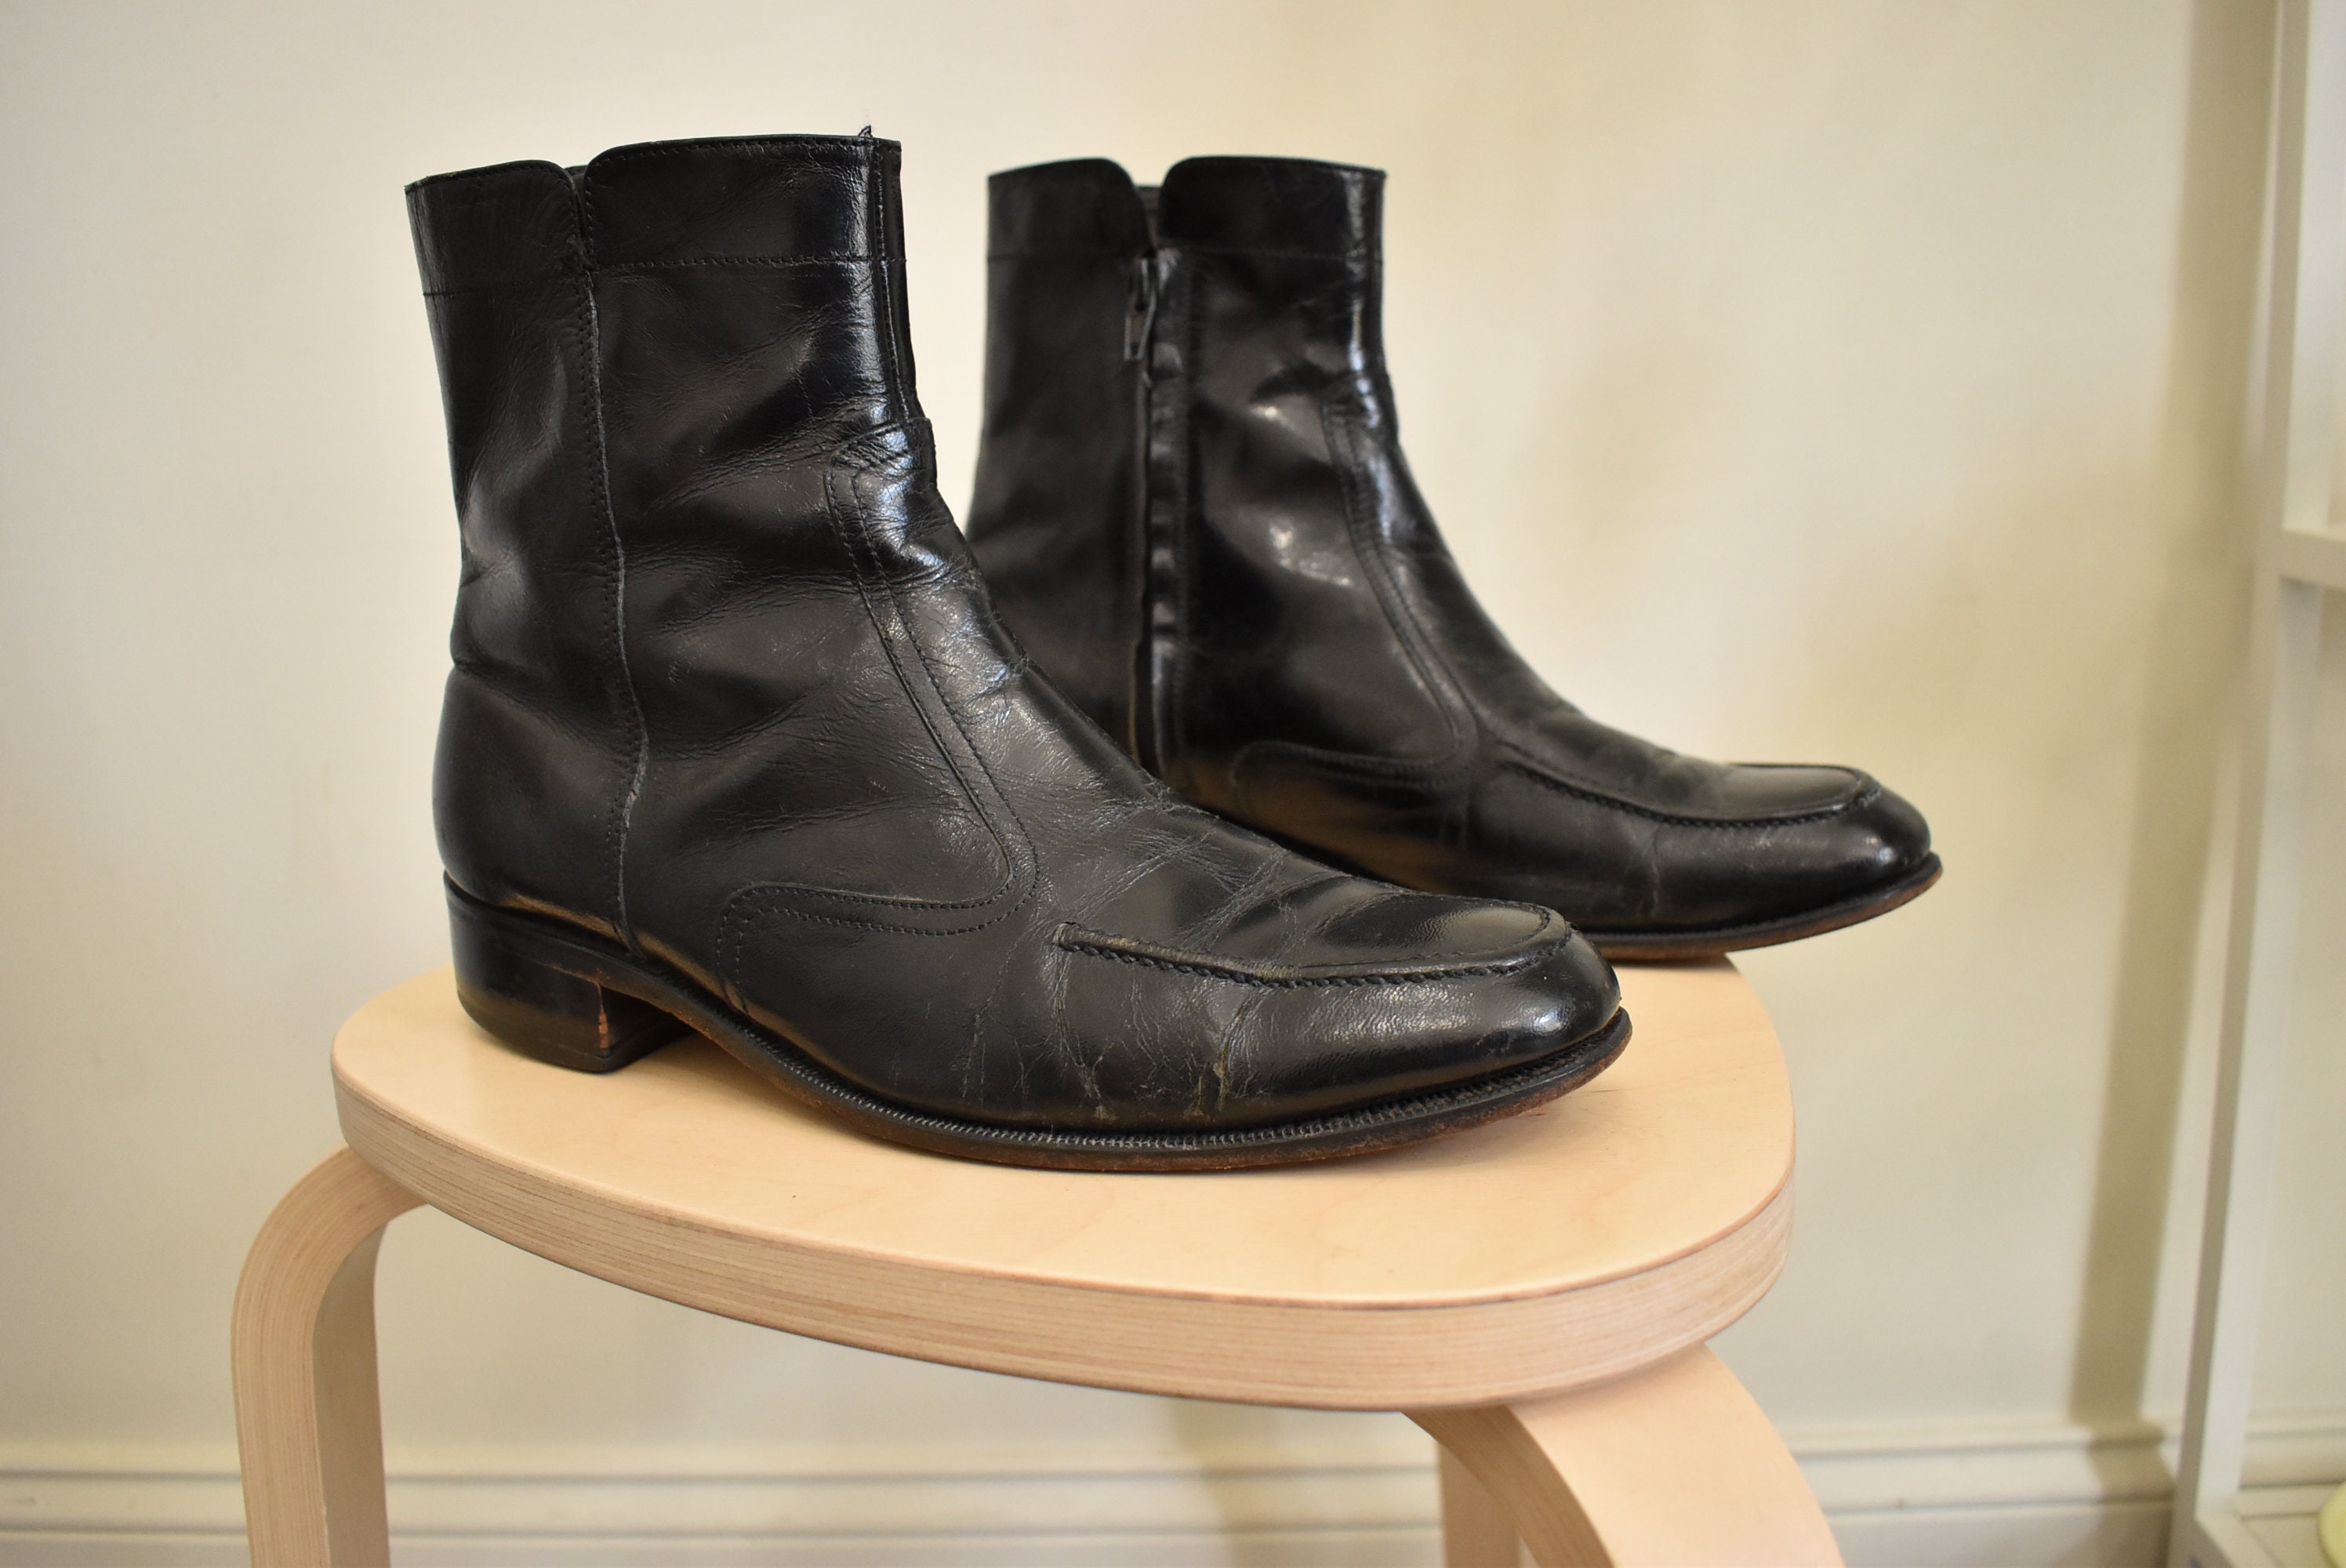 Vintage Florsheim Beatle Boots // Black Leather Ankle Boots | Etsy